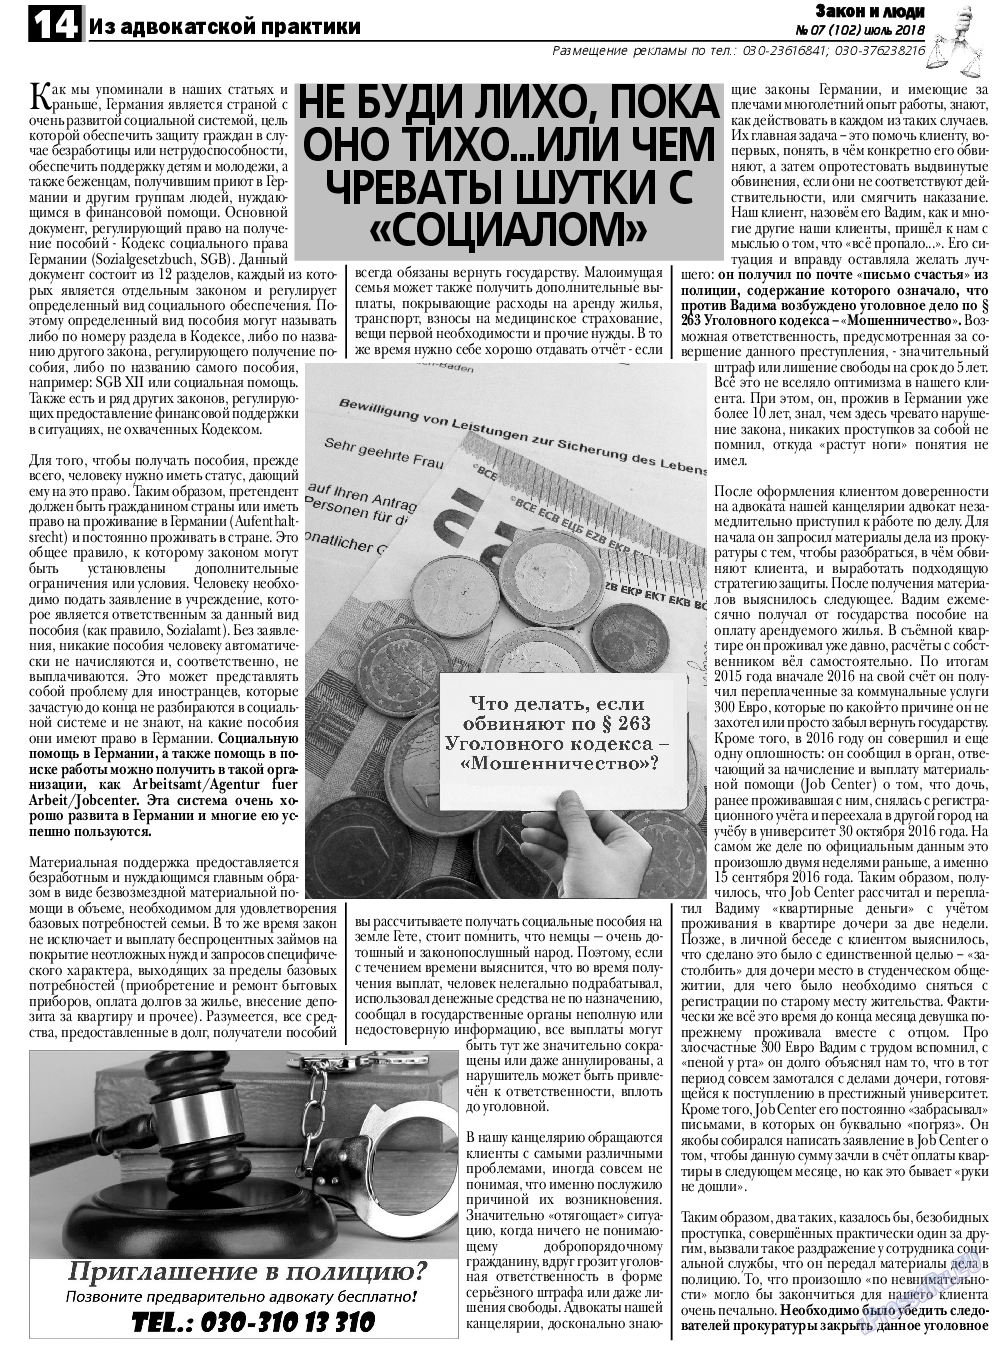 Закон и люди, газета. 2018 №7 стр.14